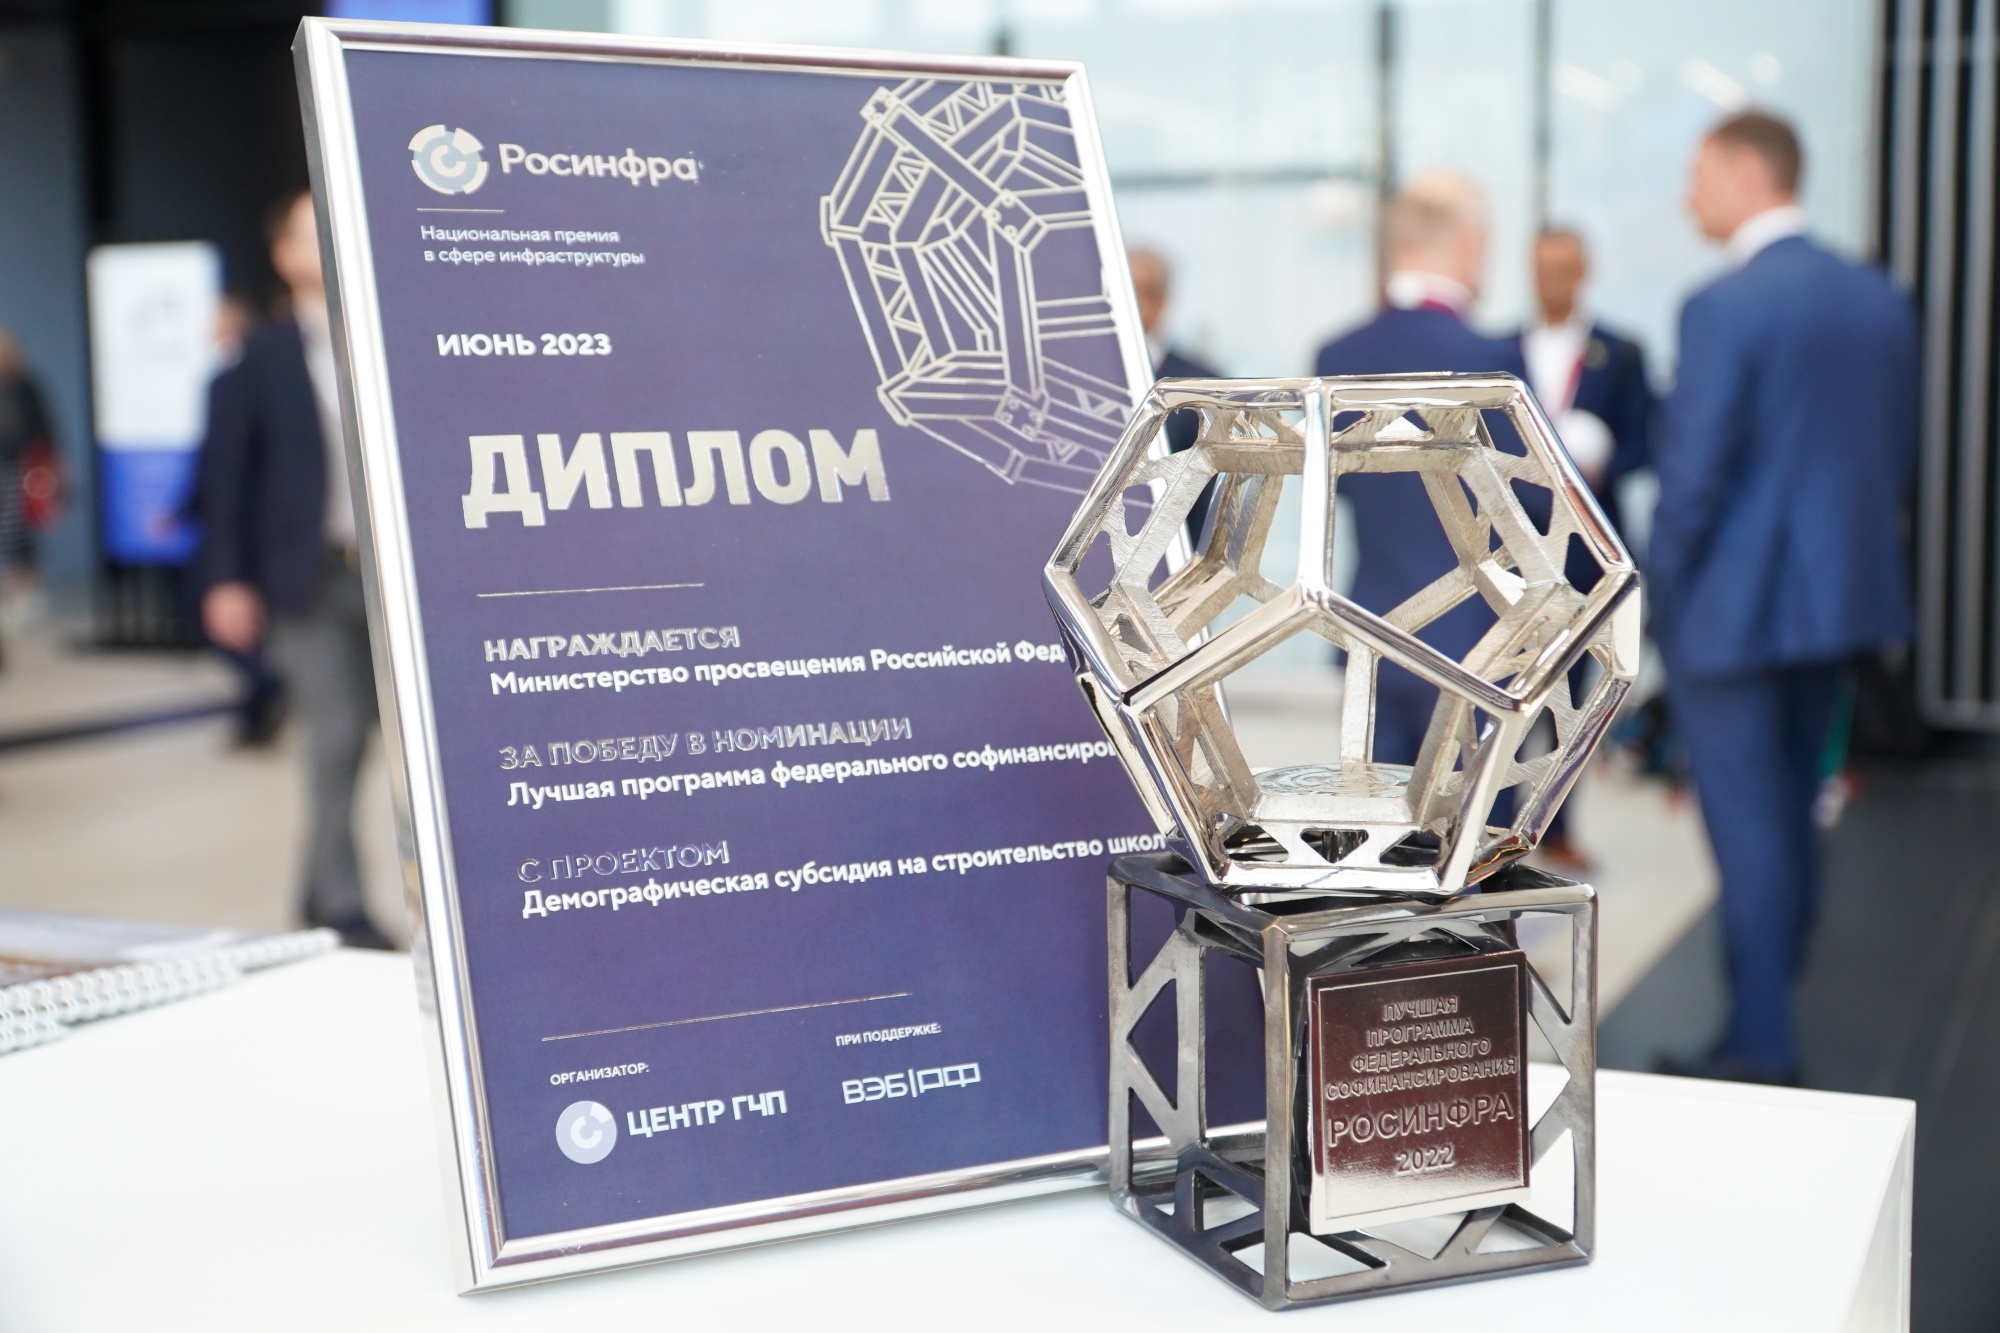 Минпросвещения России получило Национальную премию в сфере инфраструктуры «Росинфра»